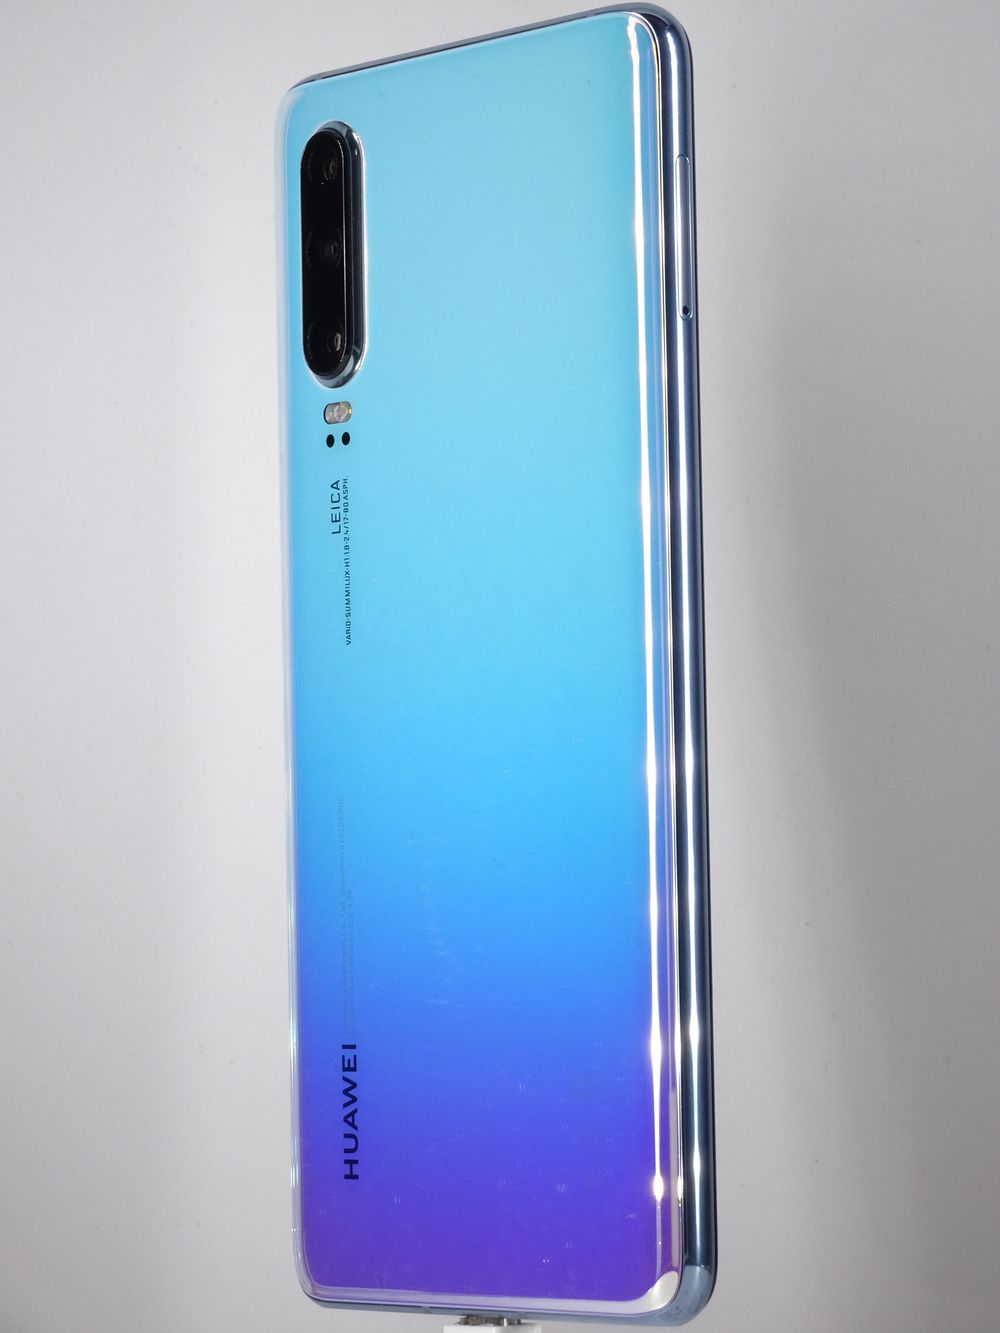 Мобилен телефон Huawei, P30, 64 GB, Breathing Crystal,  Като нов